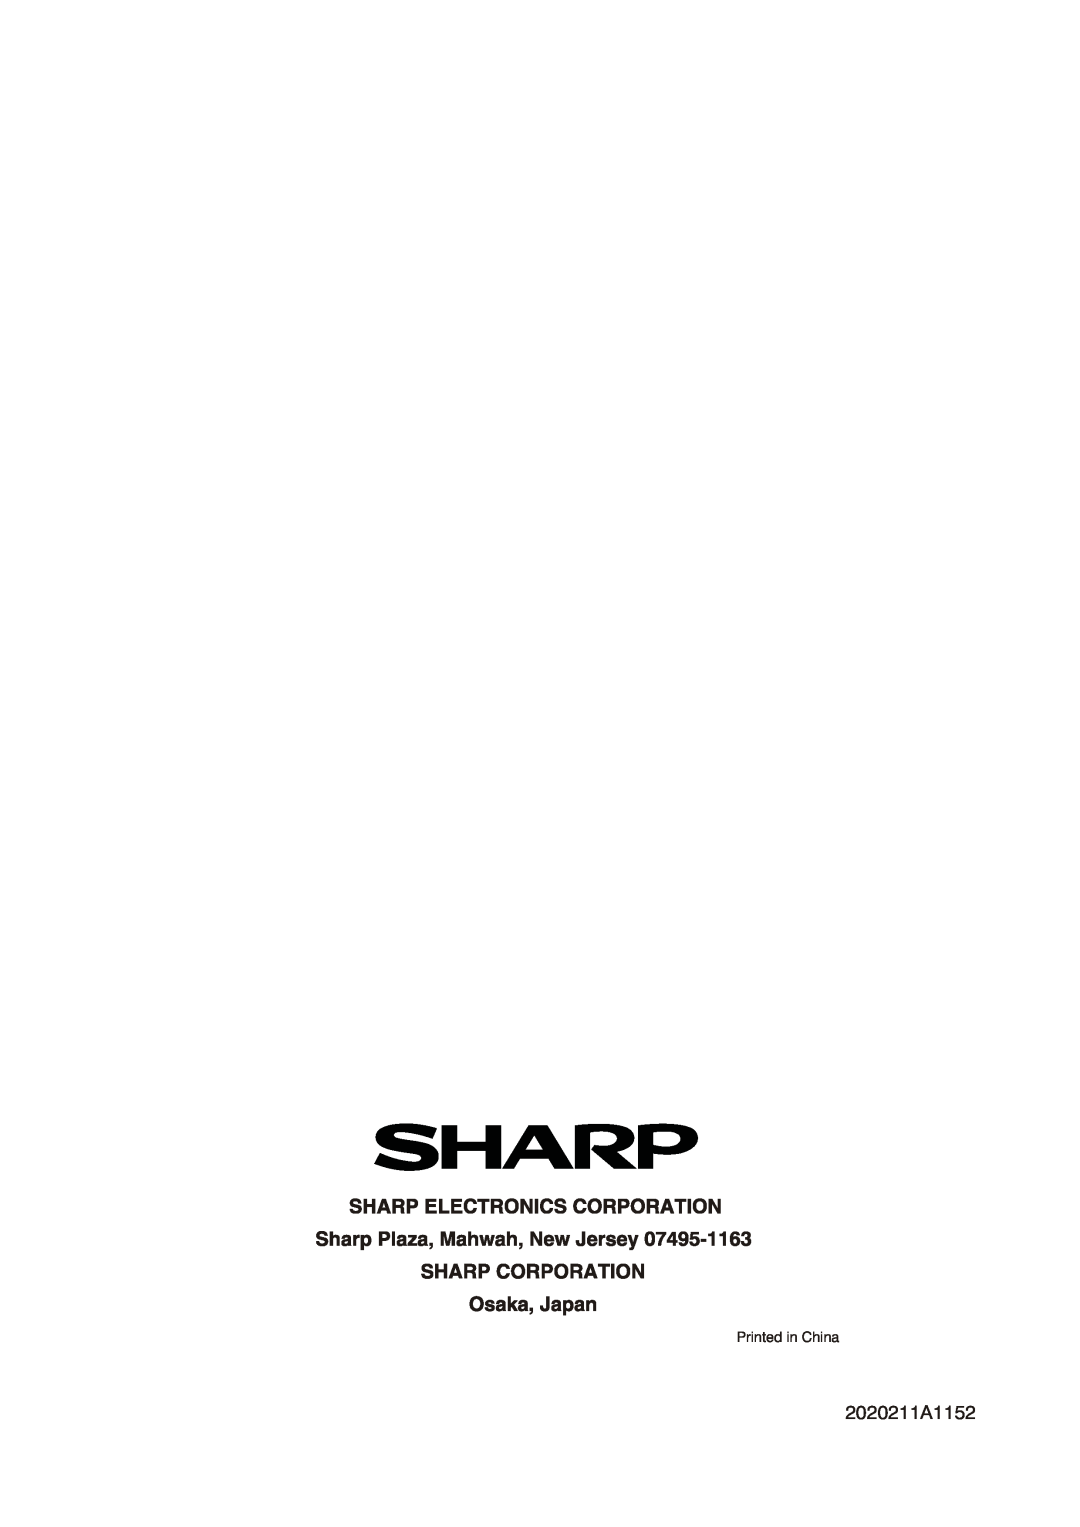 Sharp AF-S80RX, AF-S85RX, AF-S60RX manual 2020211A1152 